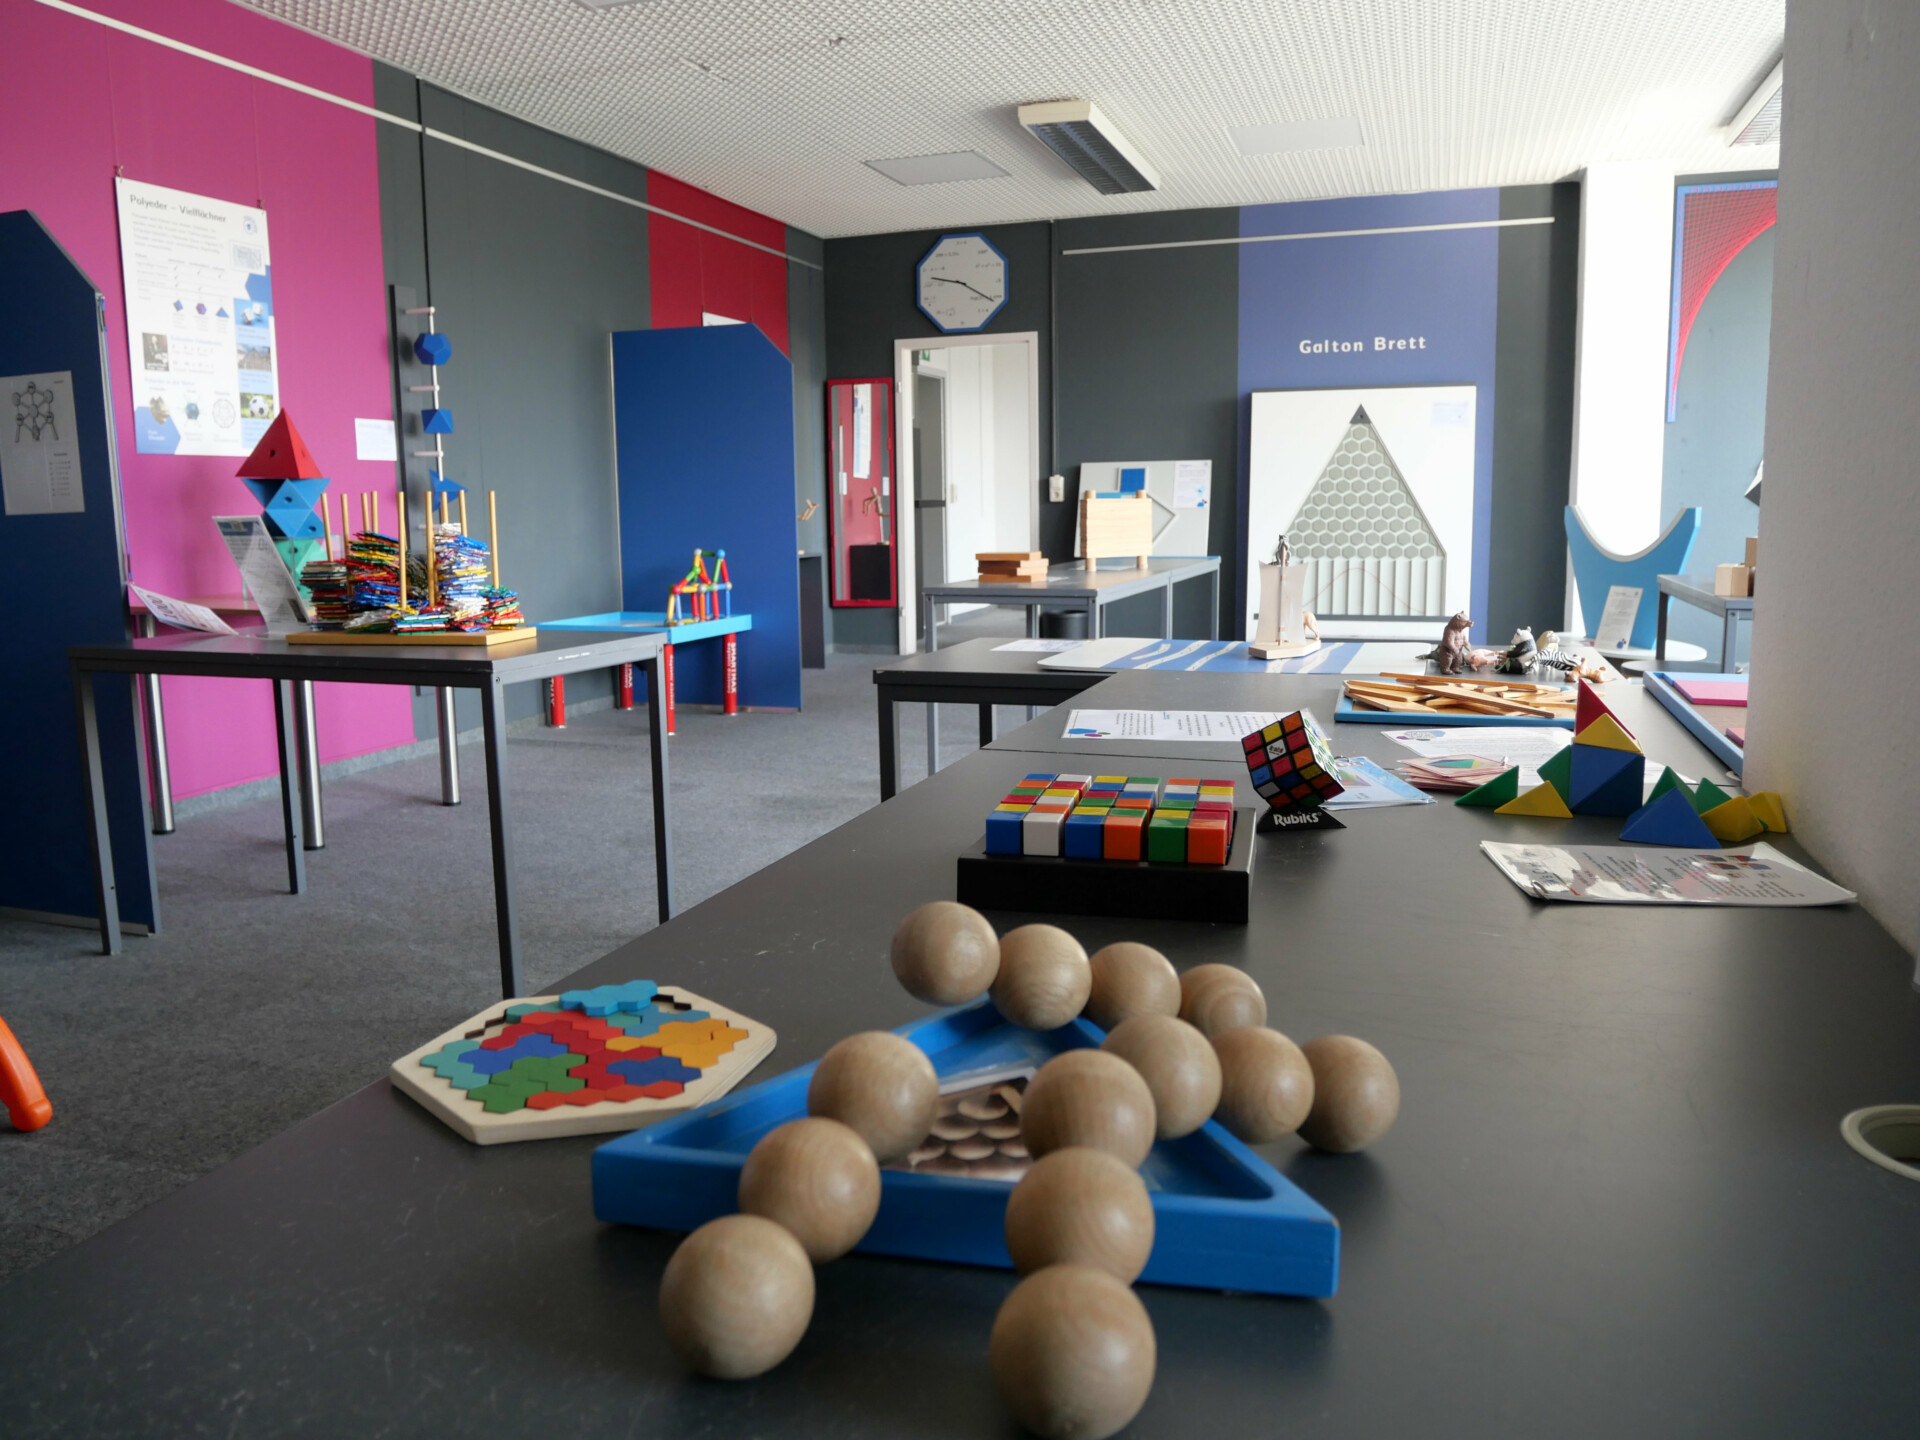 Ein Spielzimmer für Kinder voller Mathematischer Spielsachen, wie ein Zauberwürfel.